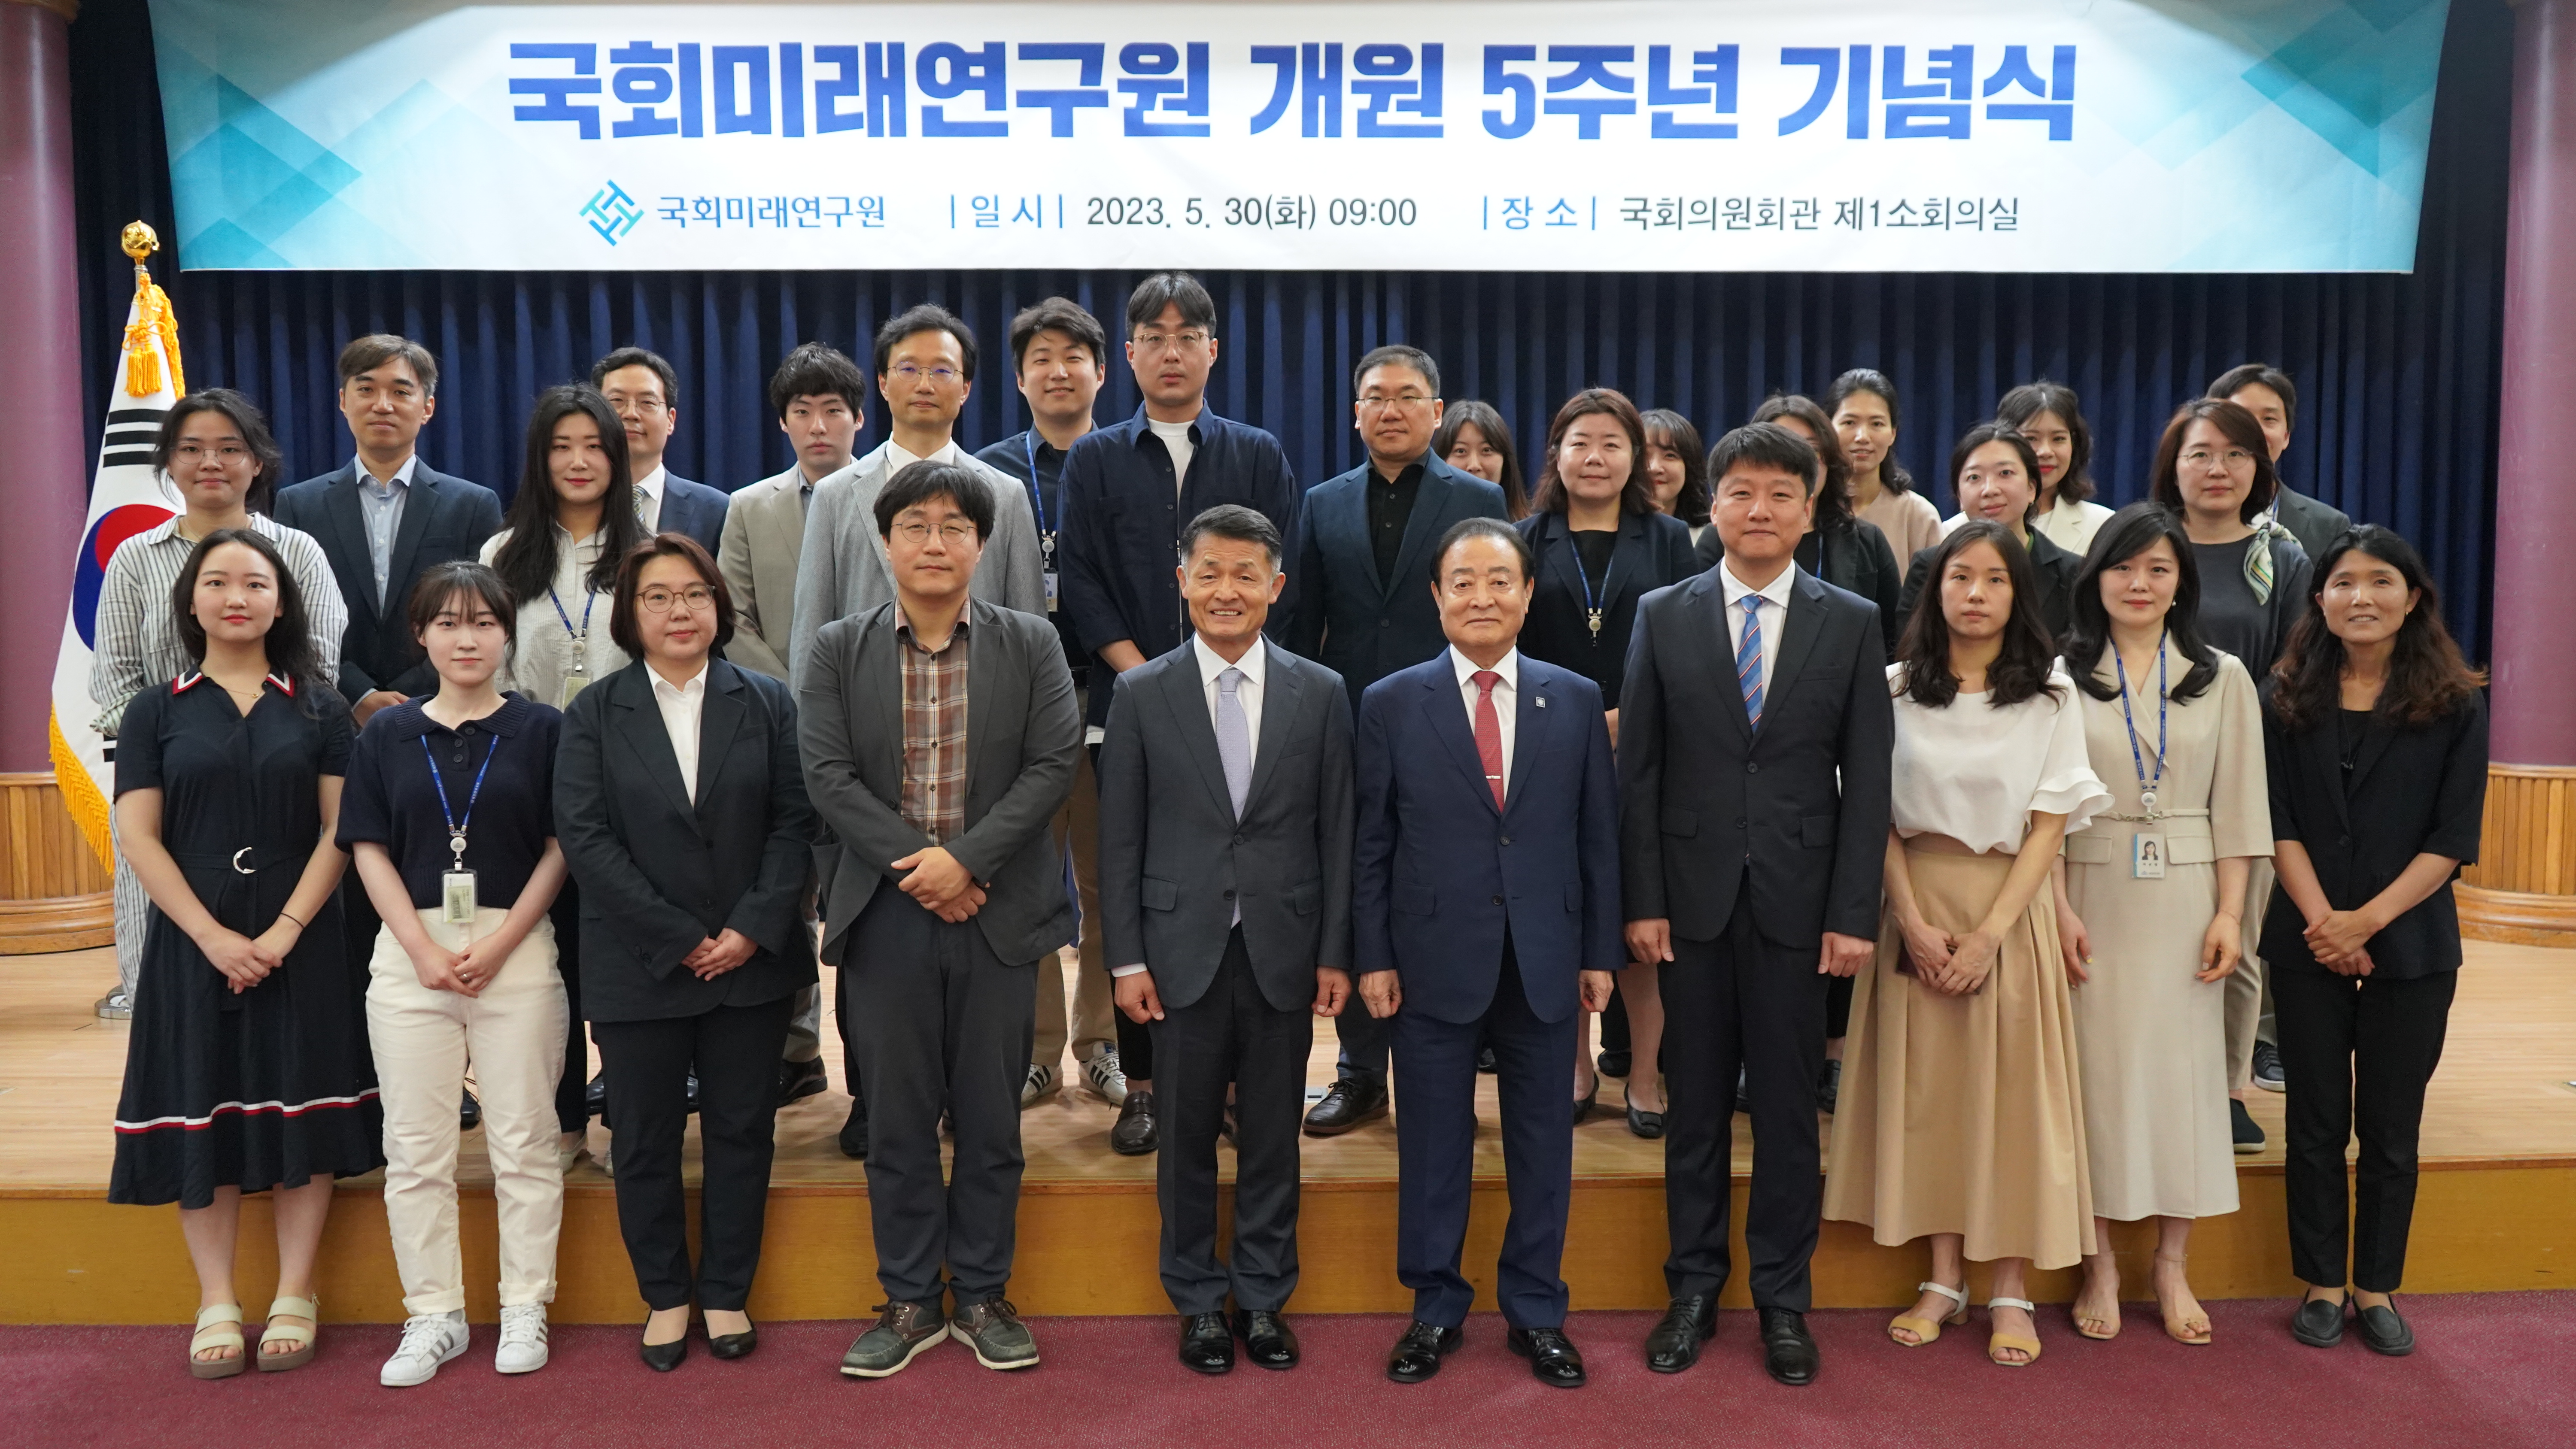 [05.30] 국회미래연구원, 개원 5주년 기념식 개최5